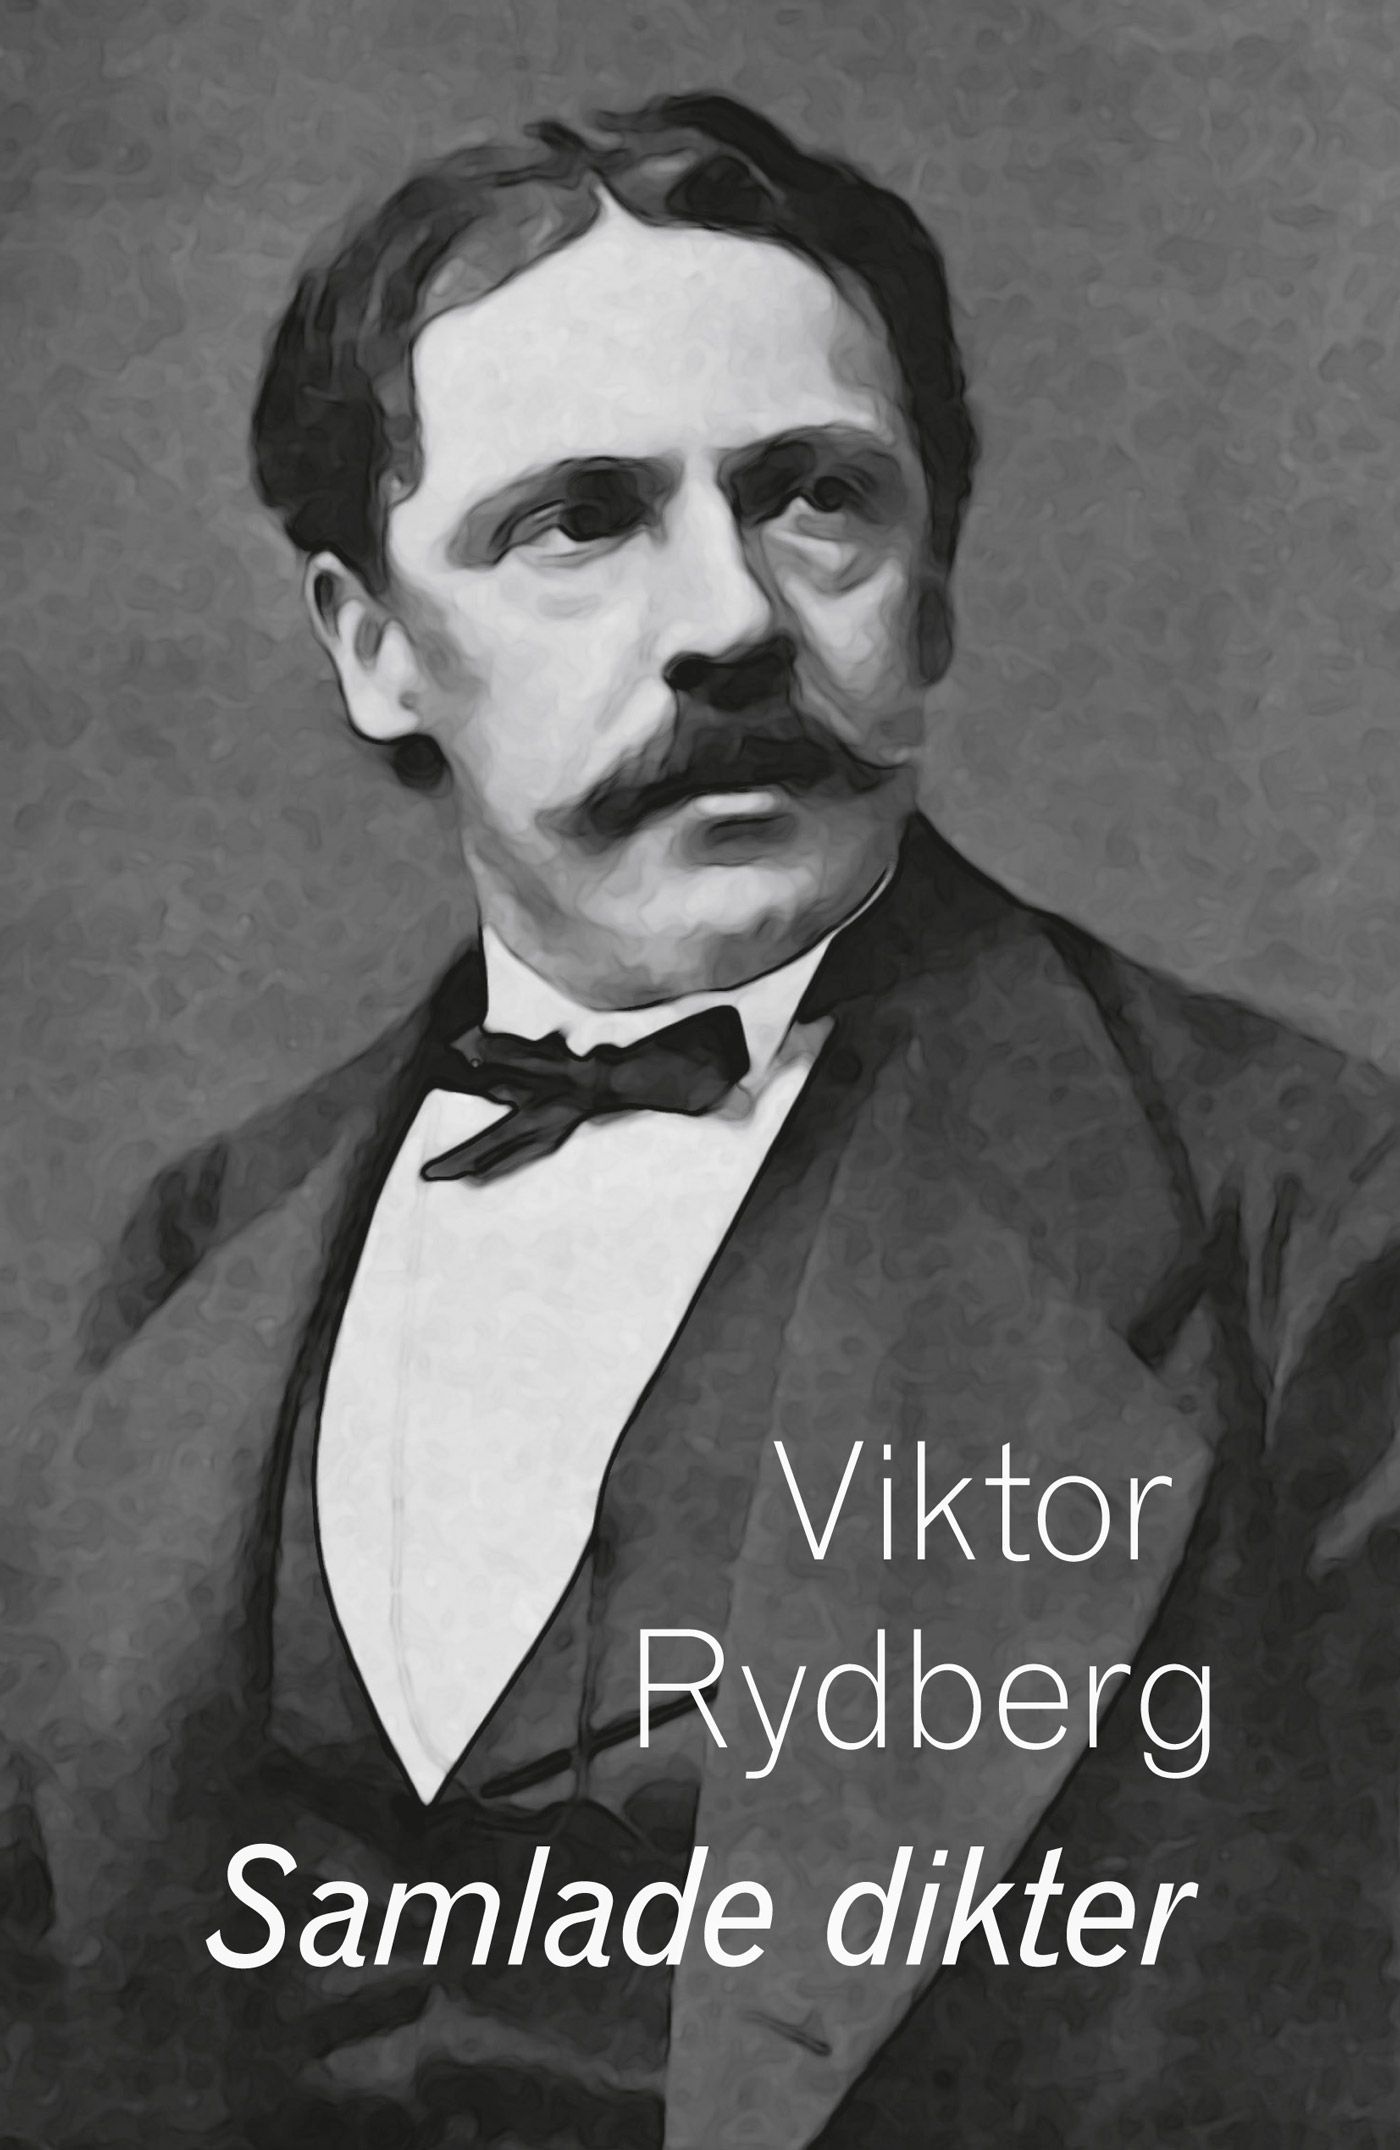 Samlade dikter, e-bog af Viktor Rydberg